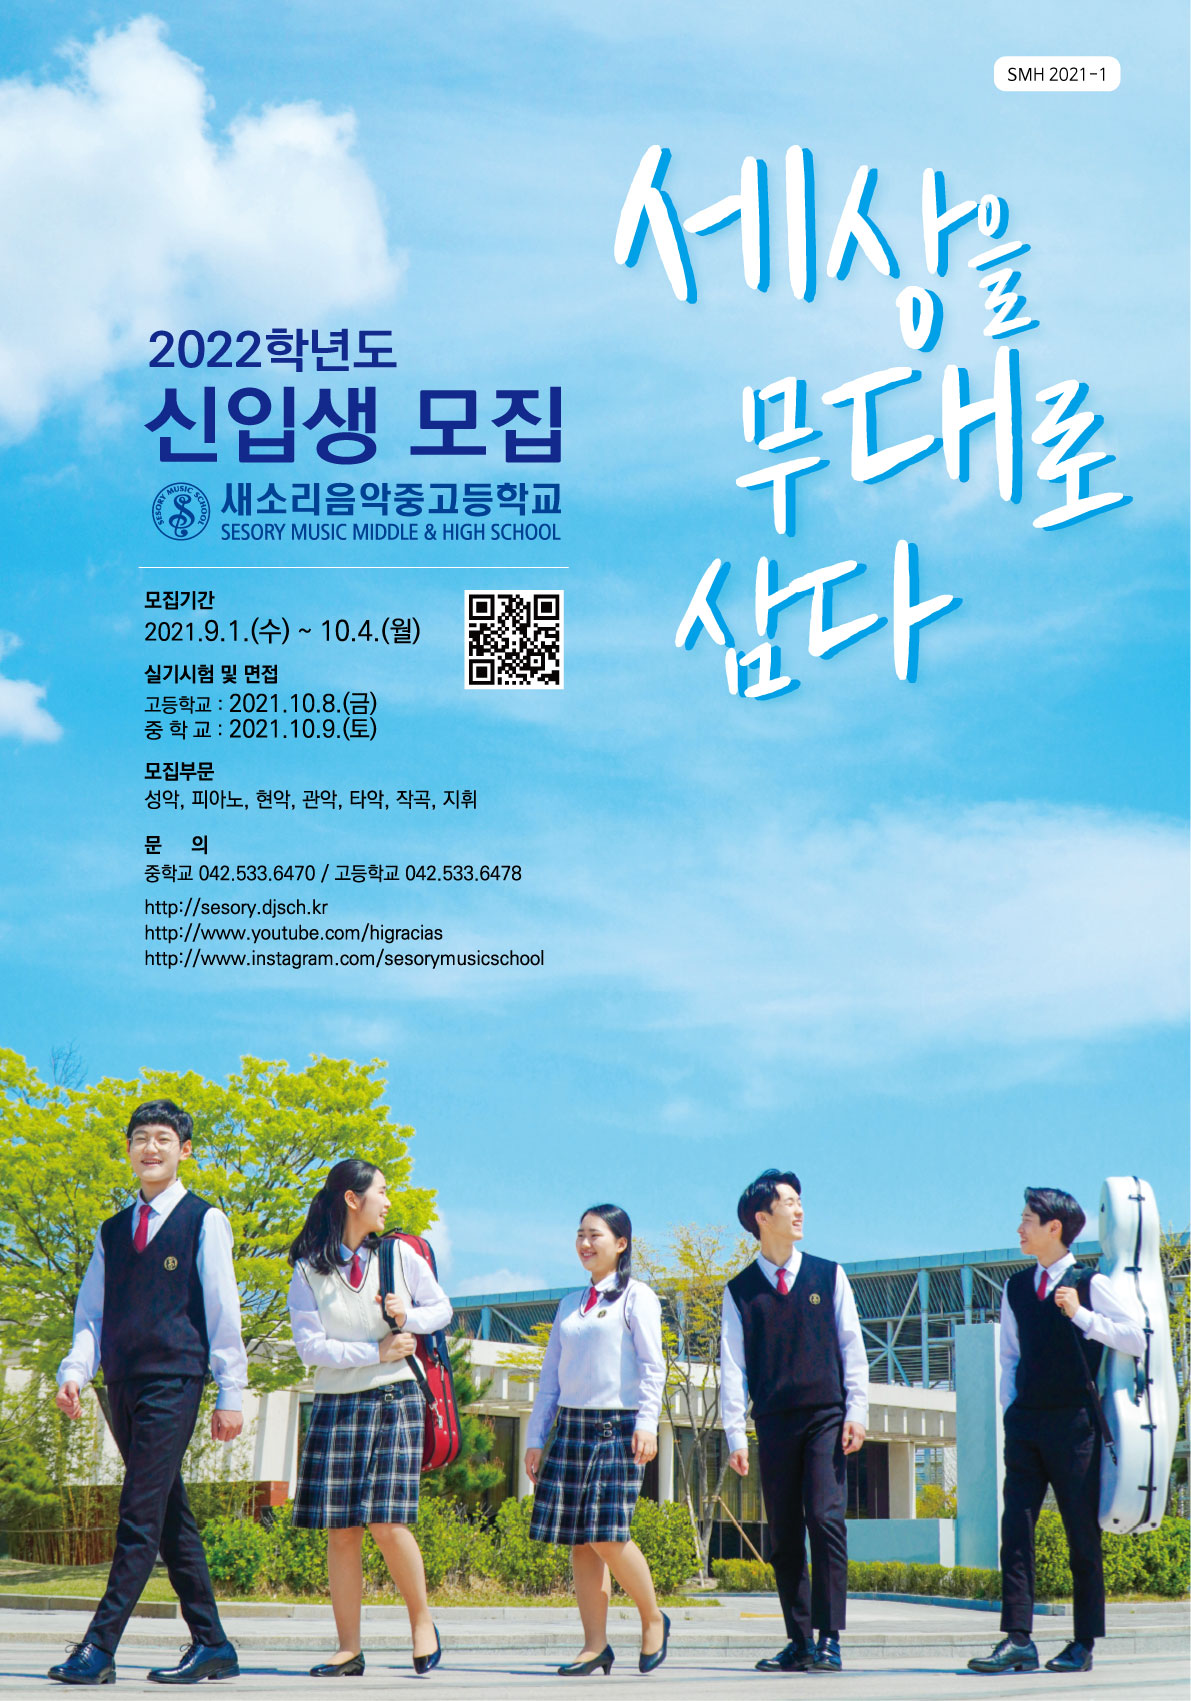 사본 -2022 새소리음악중고등학교 신입생모집 포스터